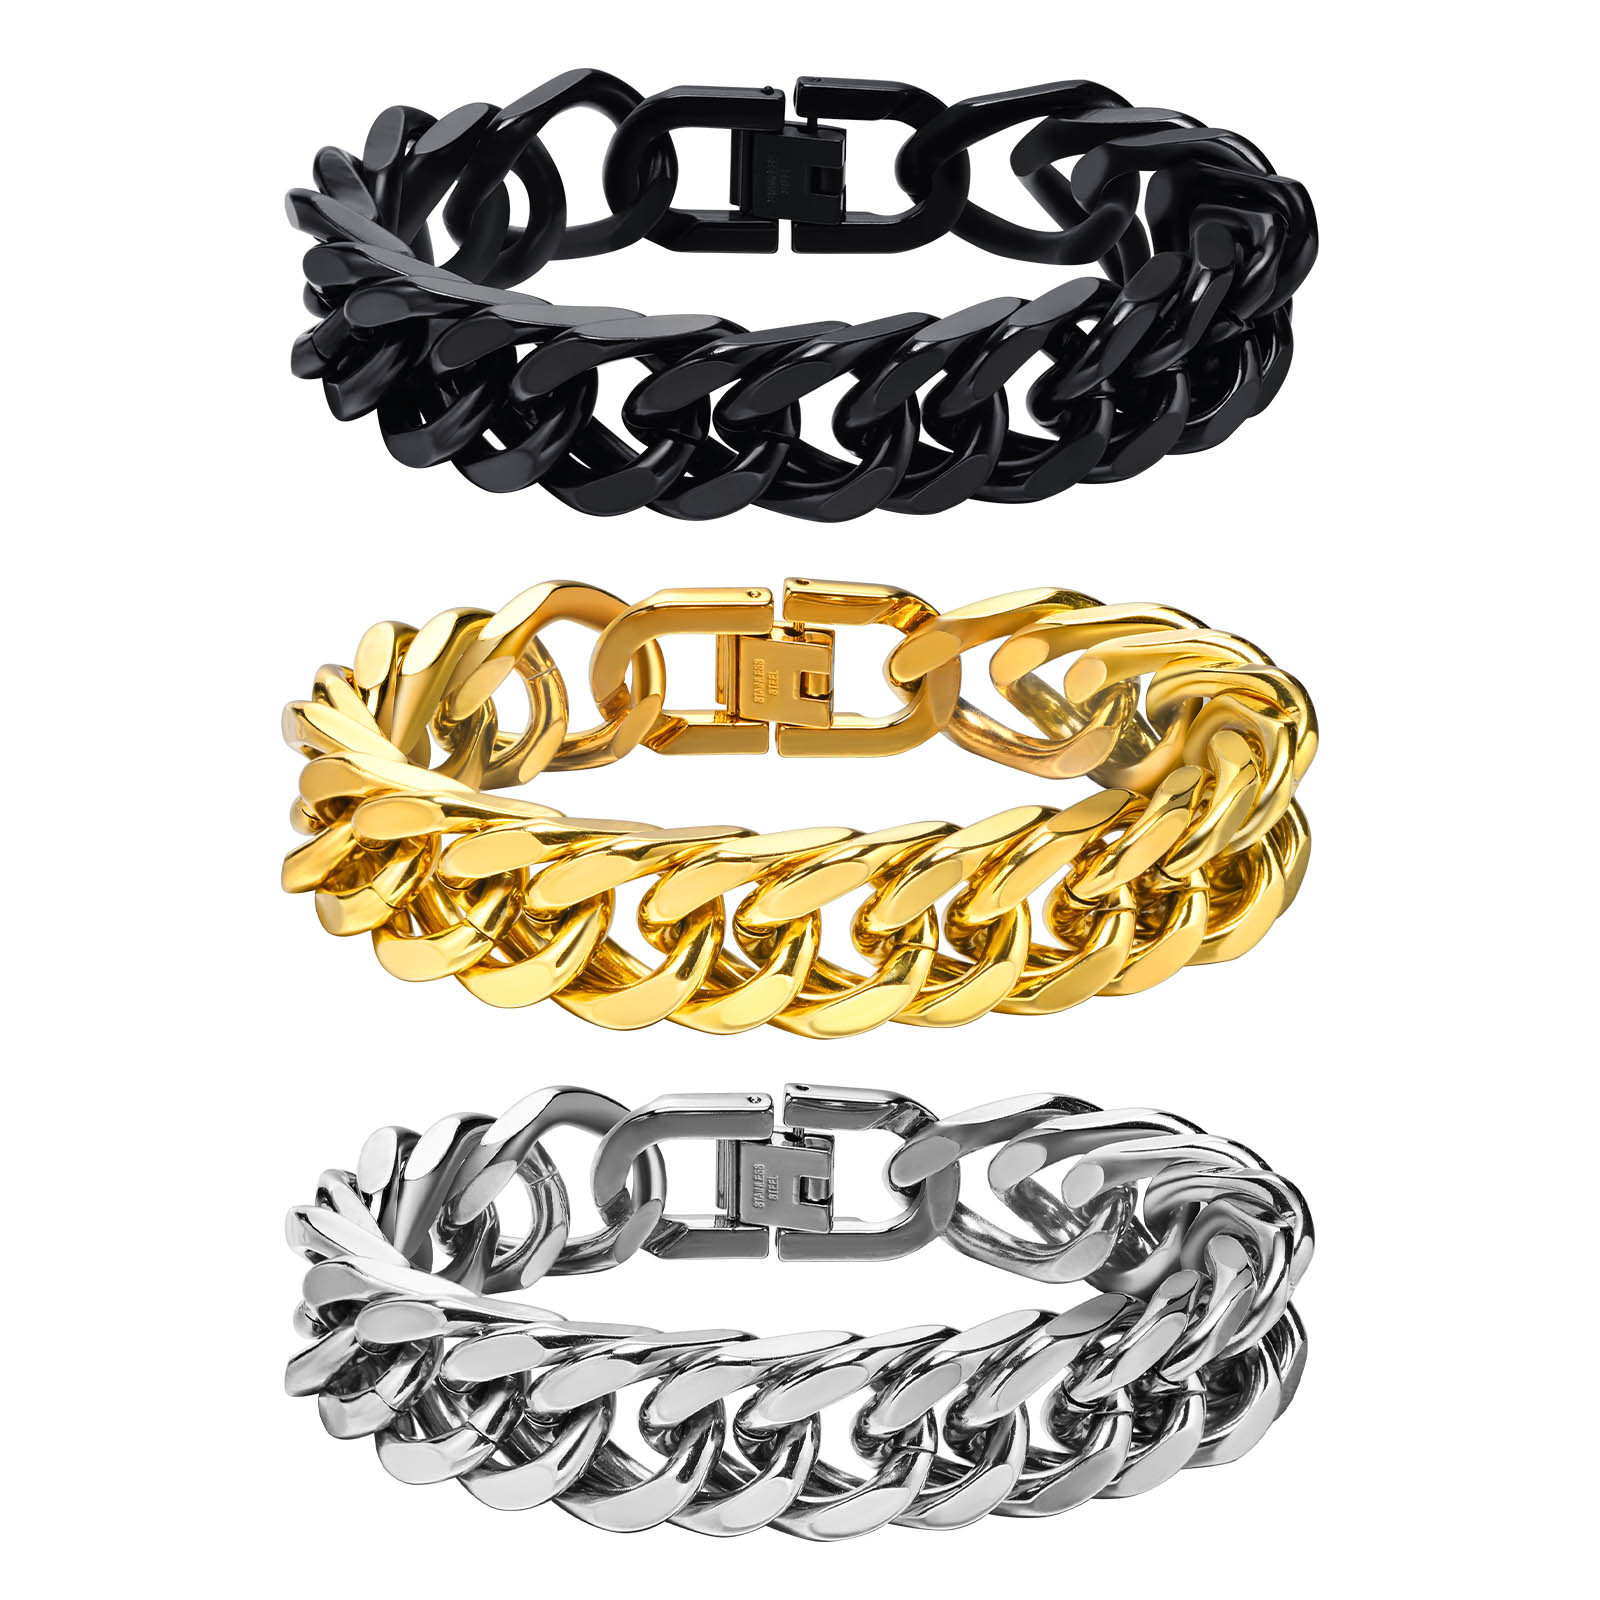 5:Steel chain width 15MM; bracelet total length 19CM